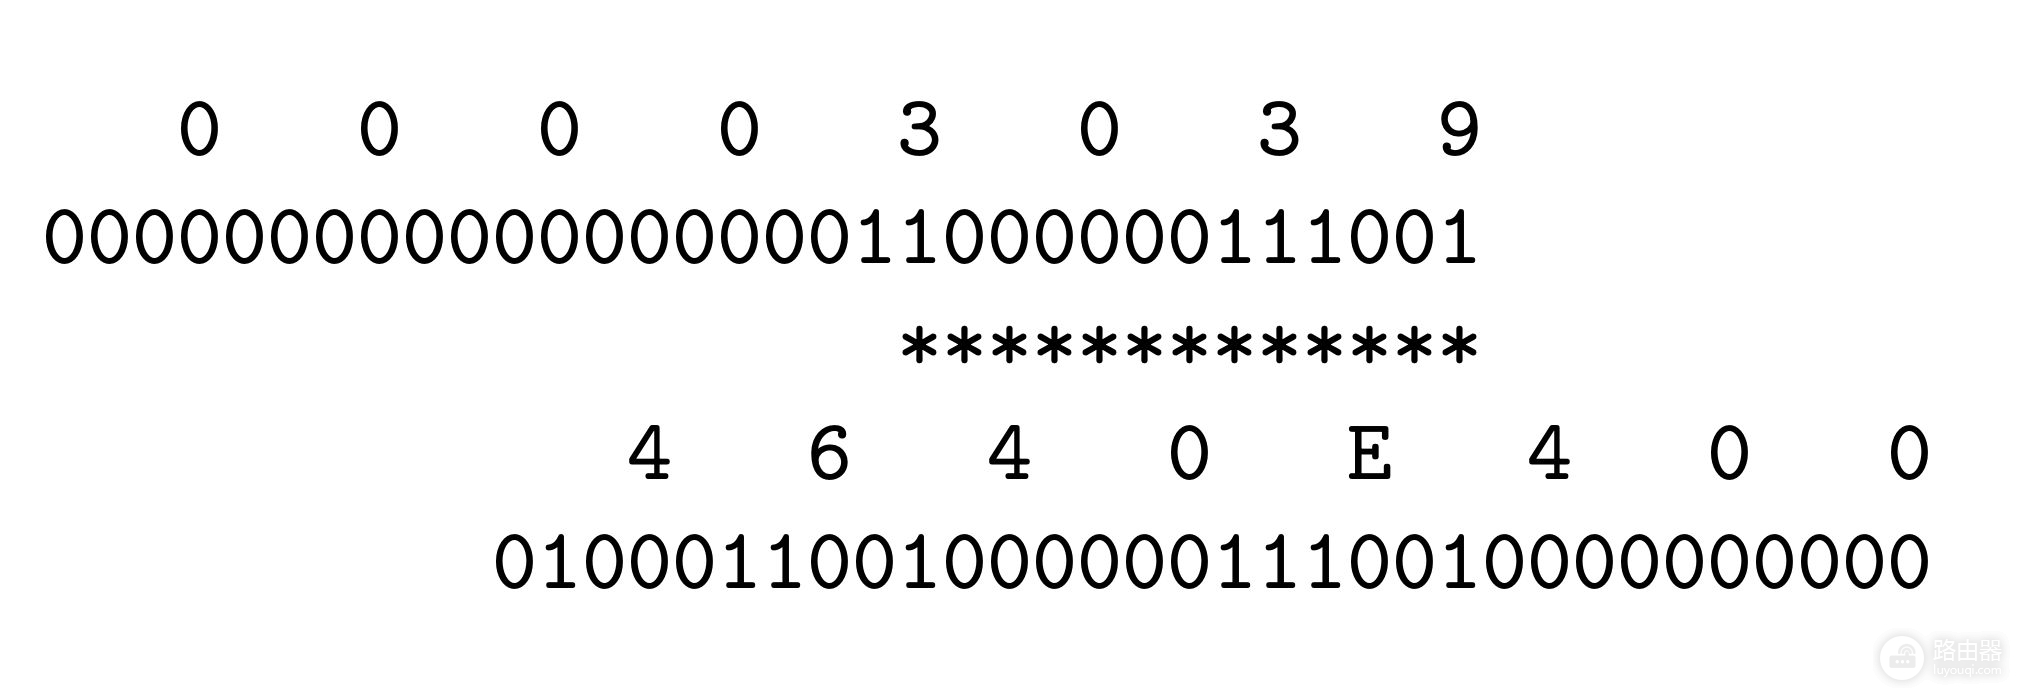 计算机系统中的地址和字节序(字节是计算机中)